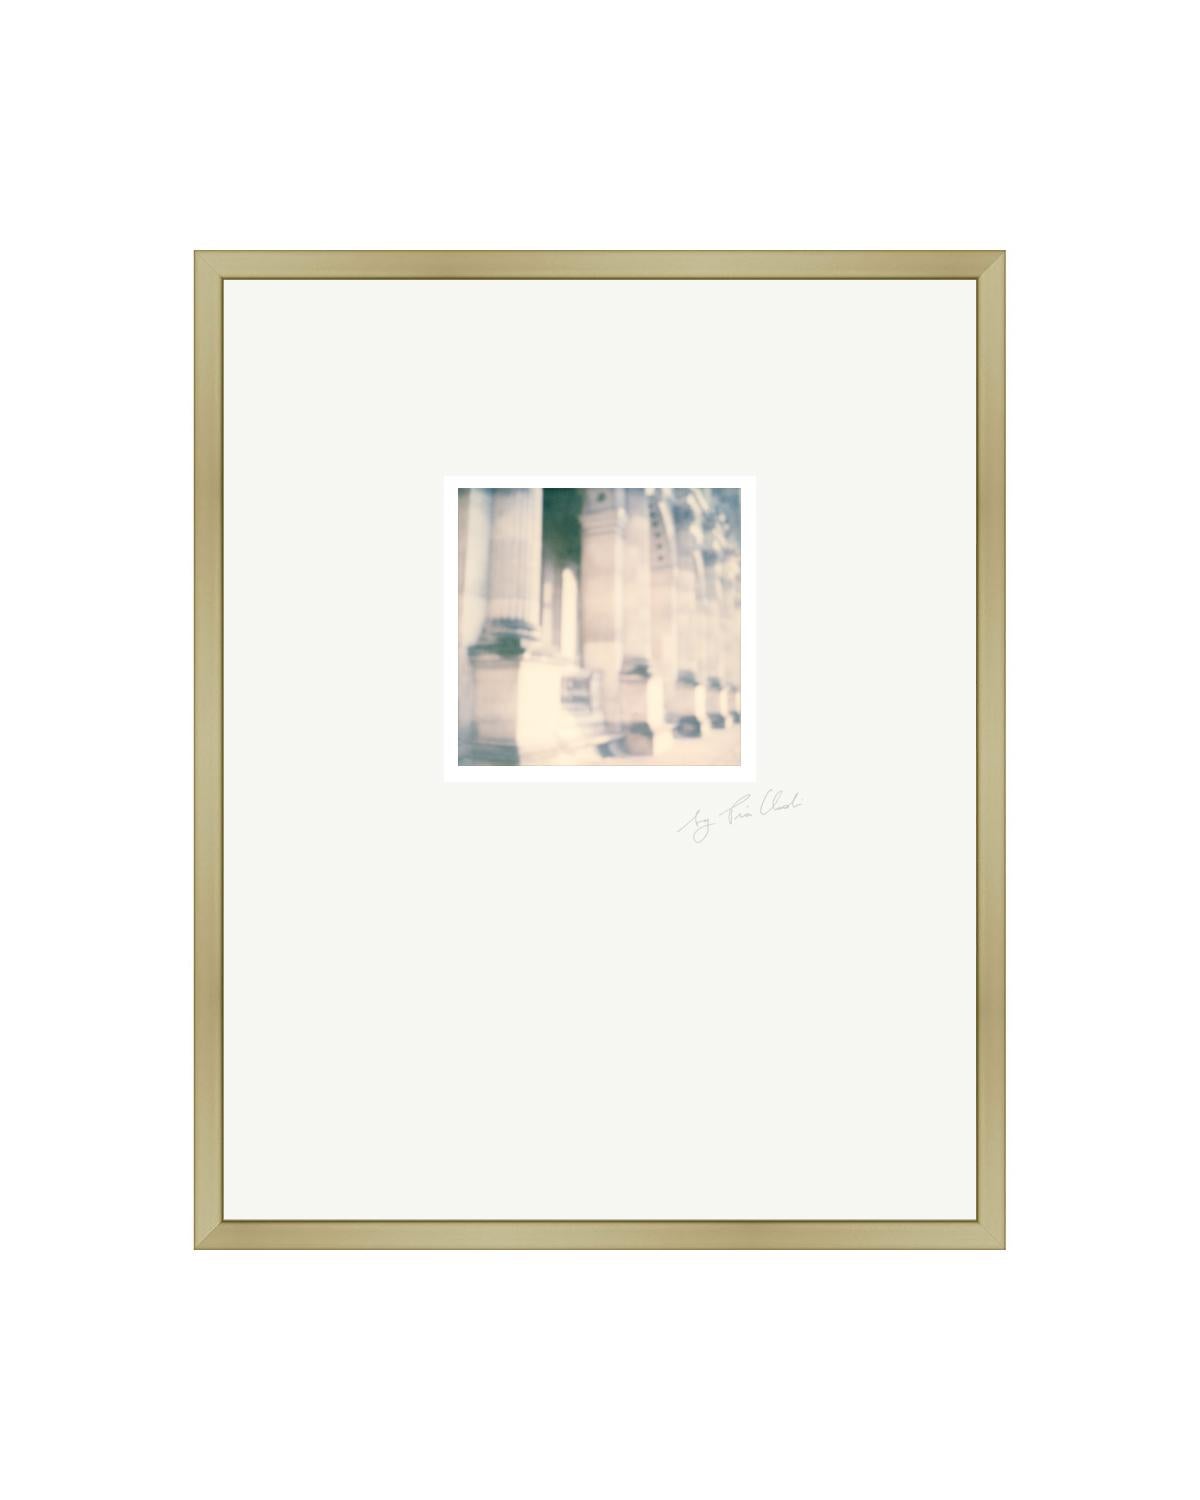 Pariser Spaziergänge III - Zeitgenössische Original gerahmte Landschaft Polaroid-Fotografie (Grau), Black and White Photograph, von Pia Clodi